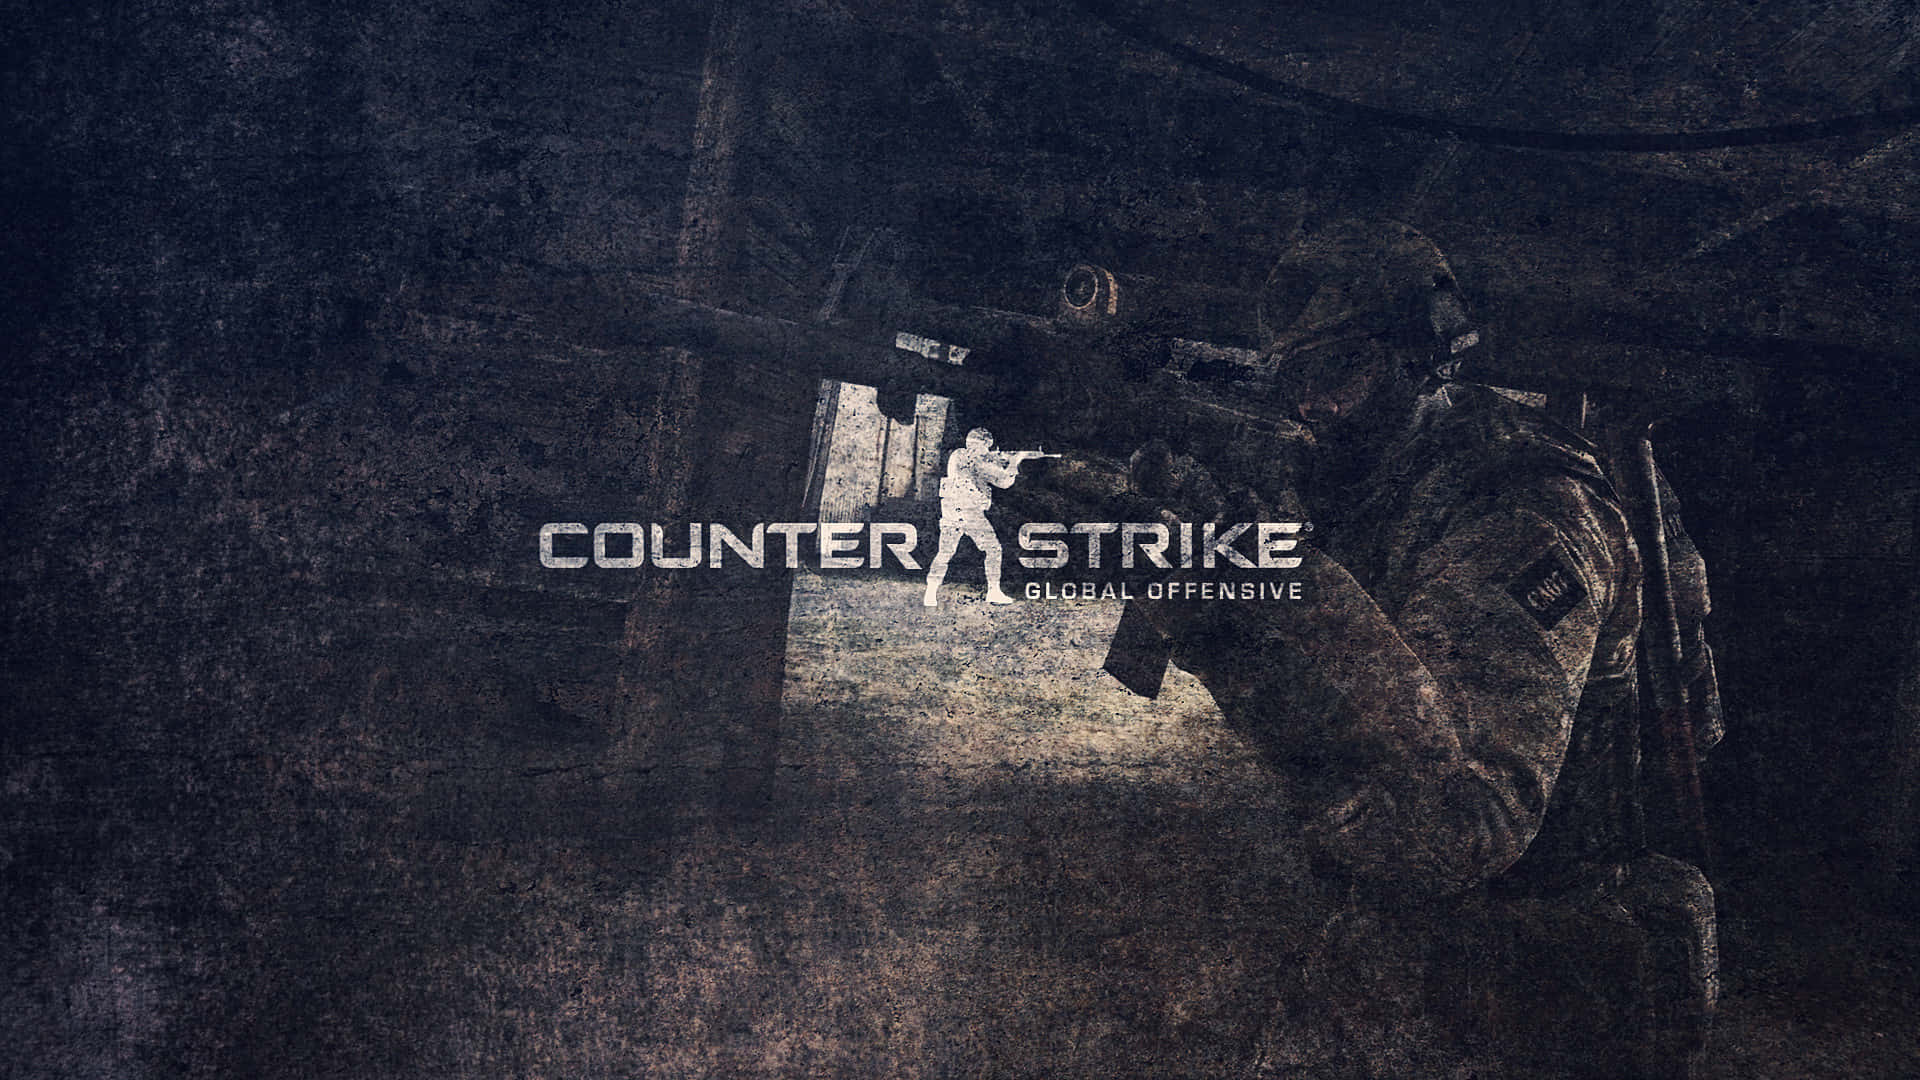 Fondode Pantalla De Counter Strike Global Offensive En 1080p De Estilo Grunge Y Confuso.